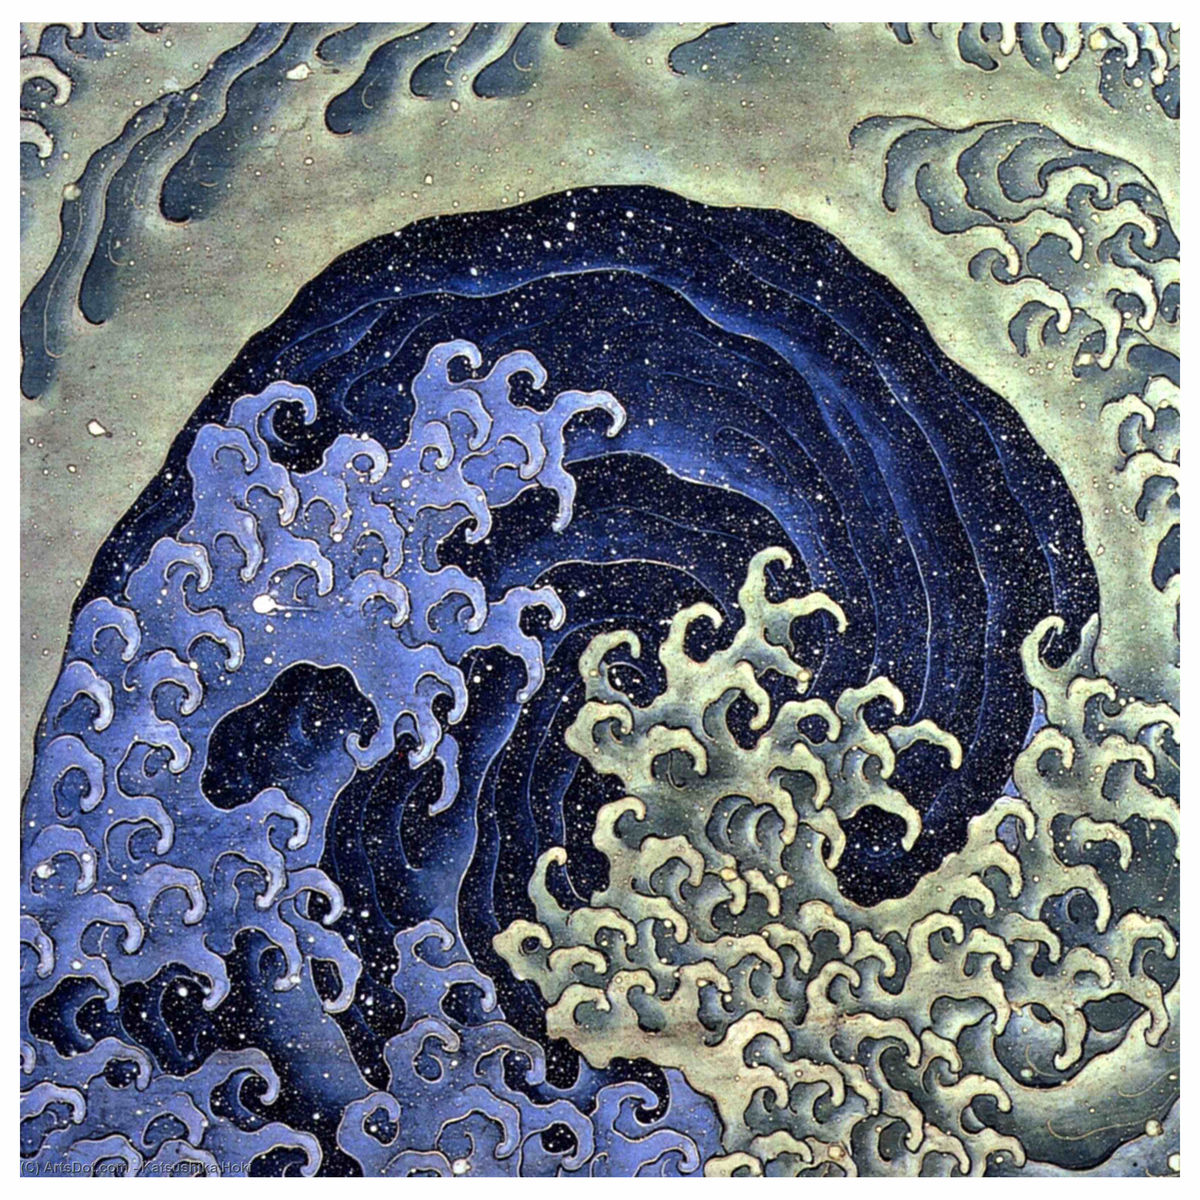 Feminine Wave by Katsushika Hokusai - 1840